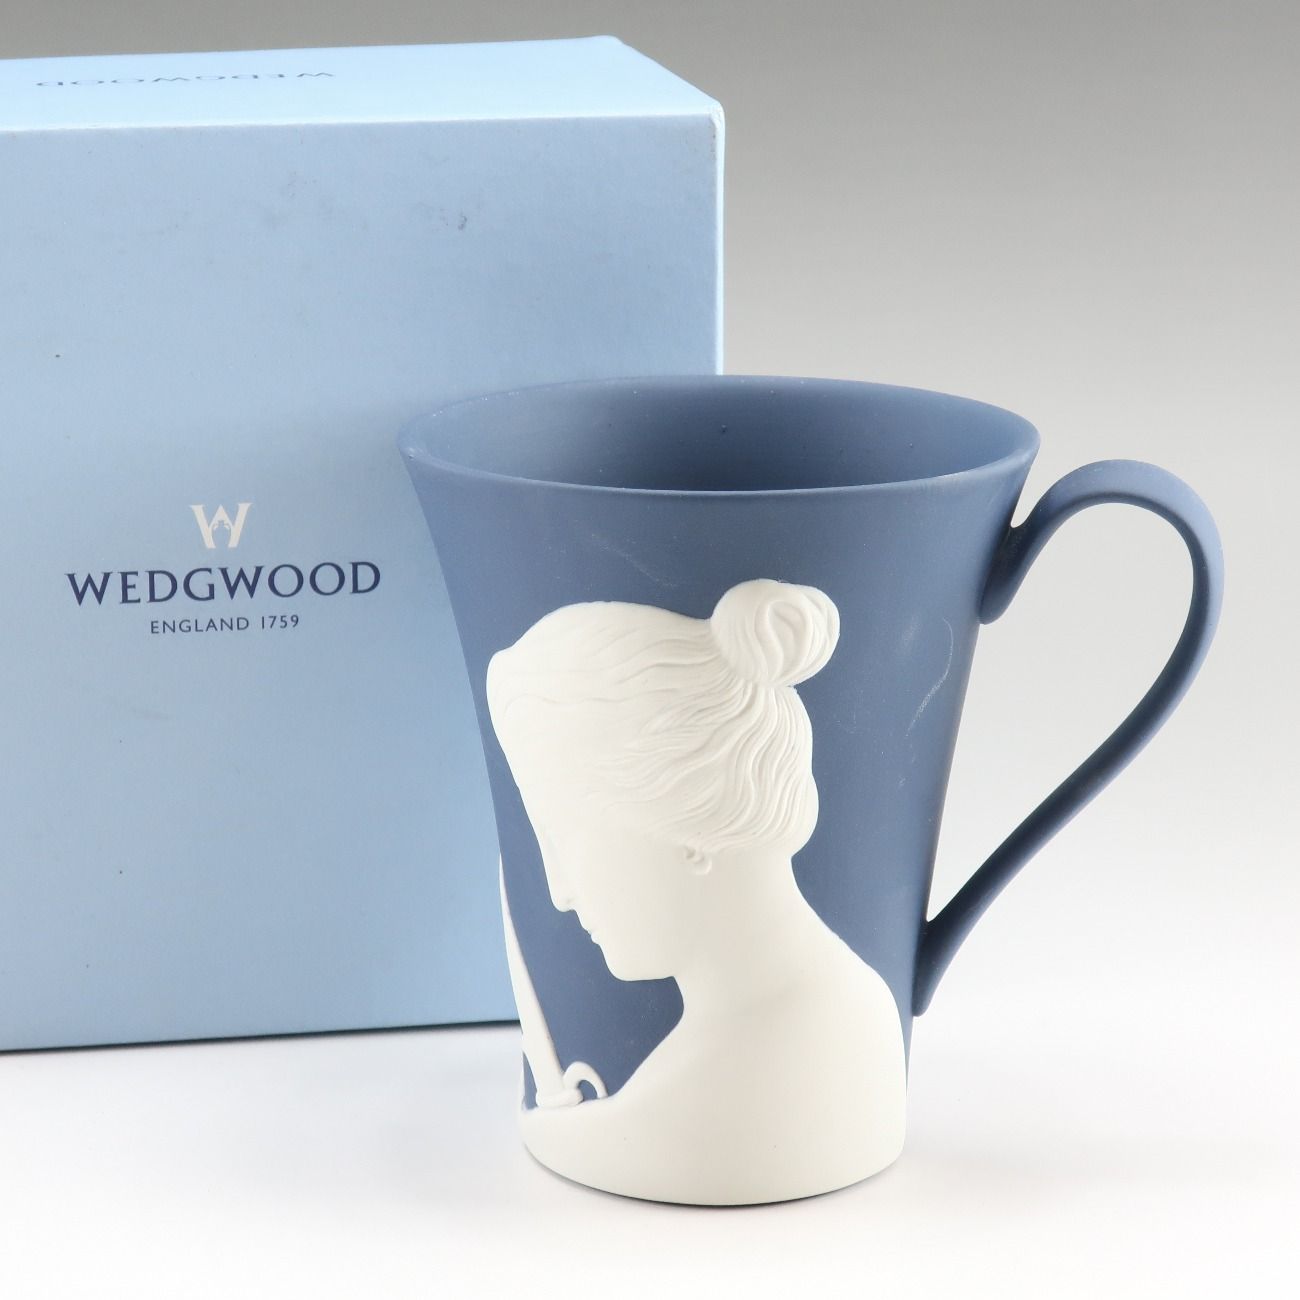 【Wedgwood】ウェッジウッド 250周年記念 ジャスパー マグカップ×1